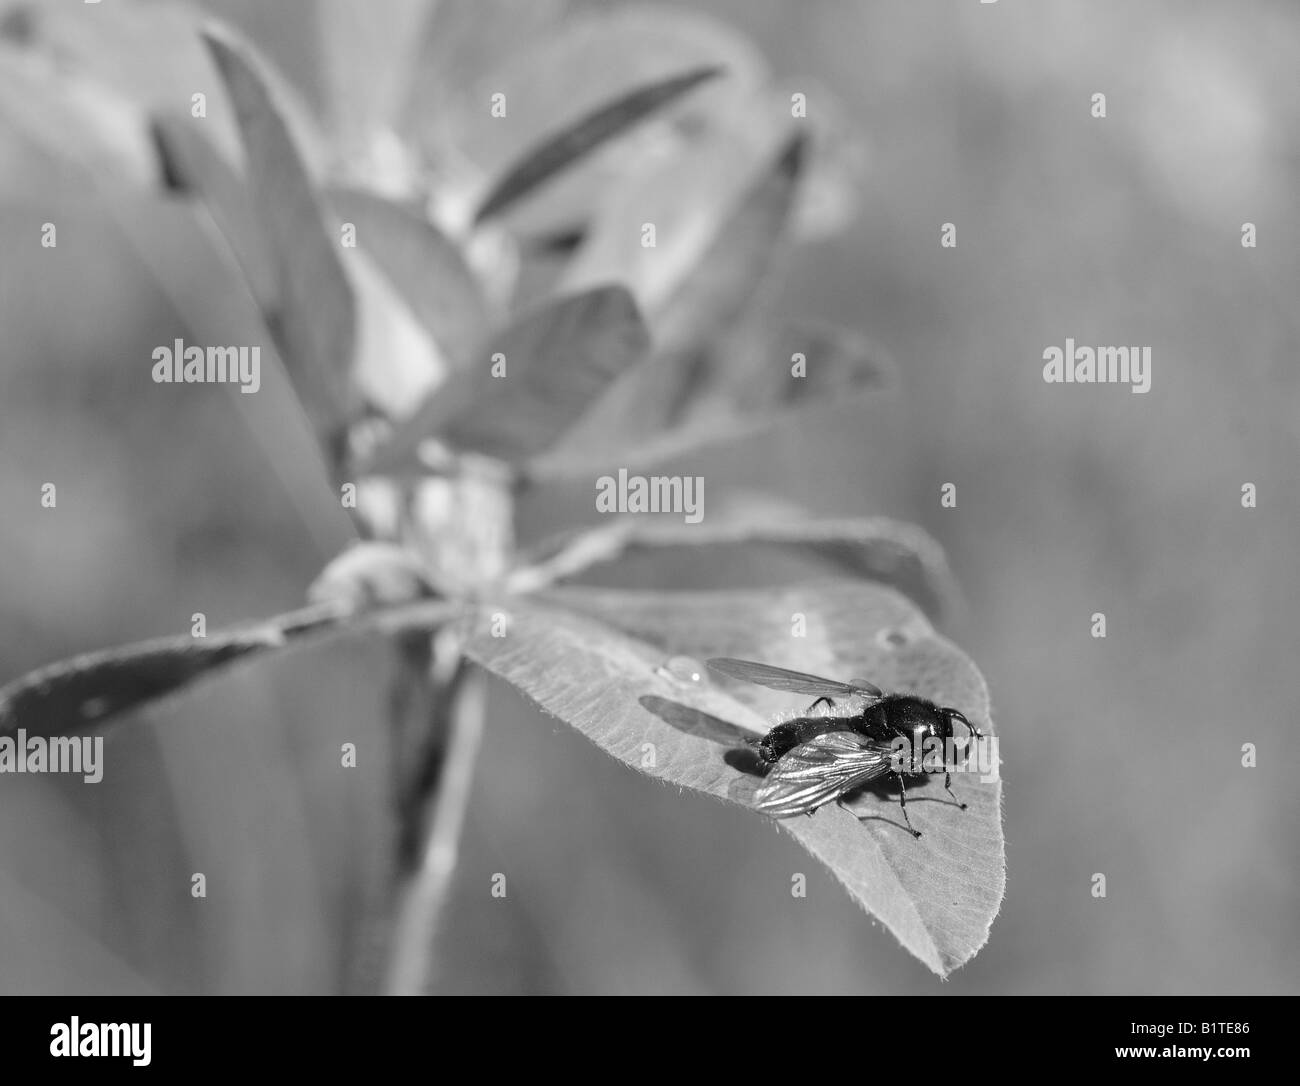 Immagine in bianco e nero di una mosca sulla foglia di una pianta infestante, con una goccia di acqua sulla foglia. Foto Stock